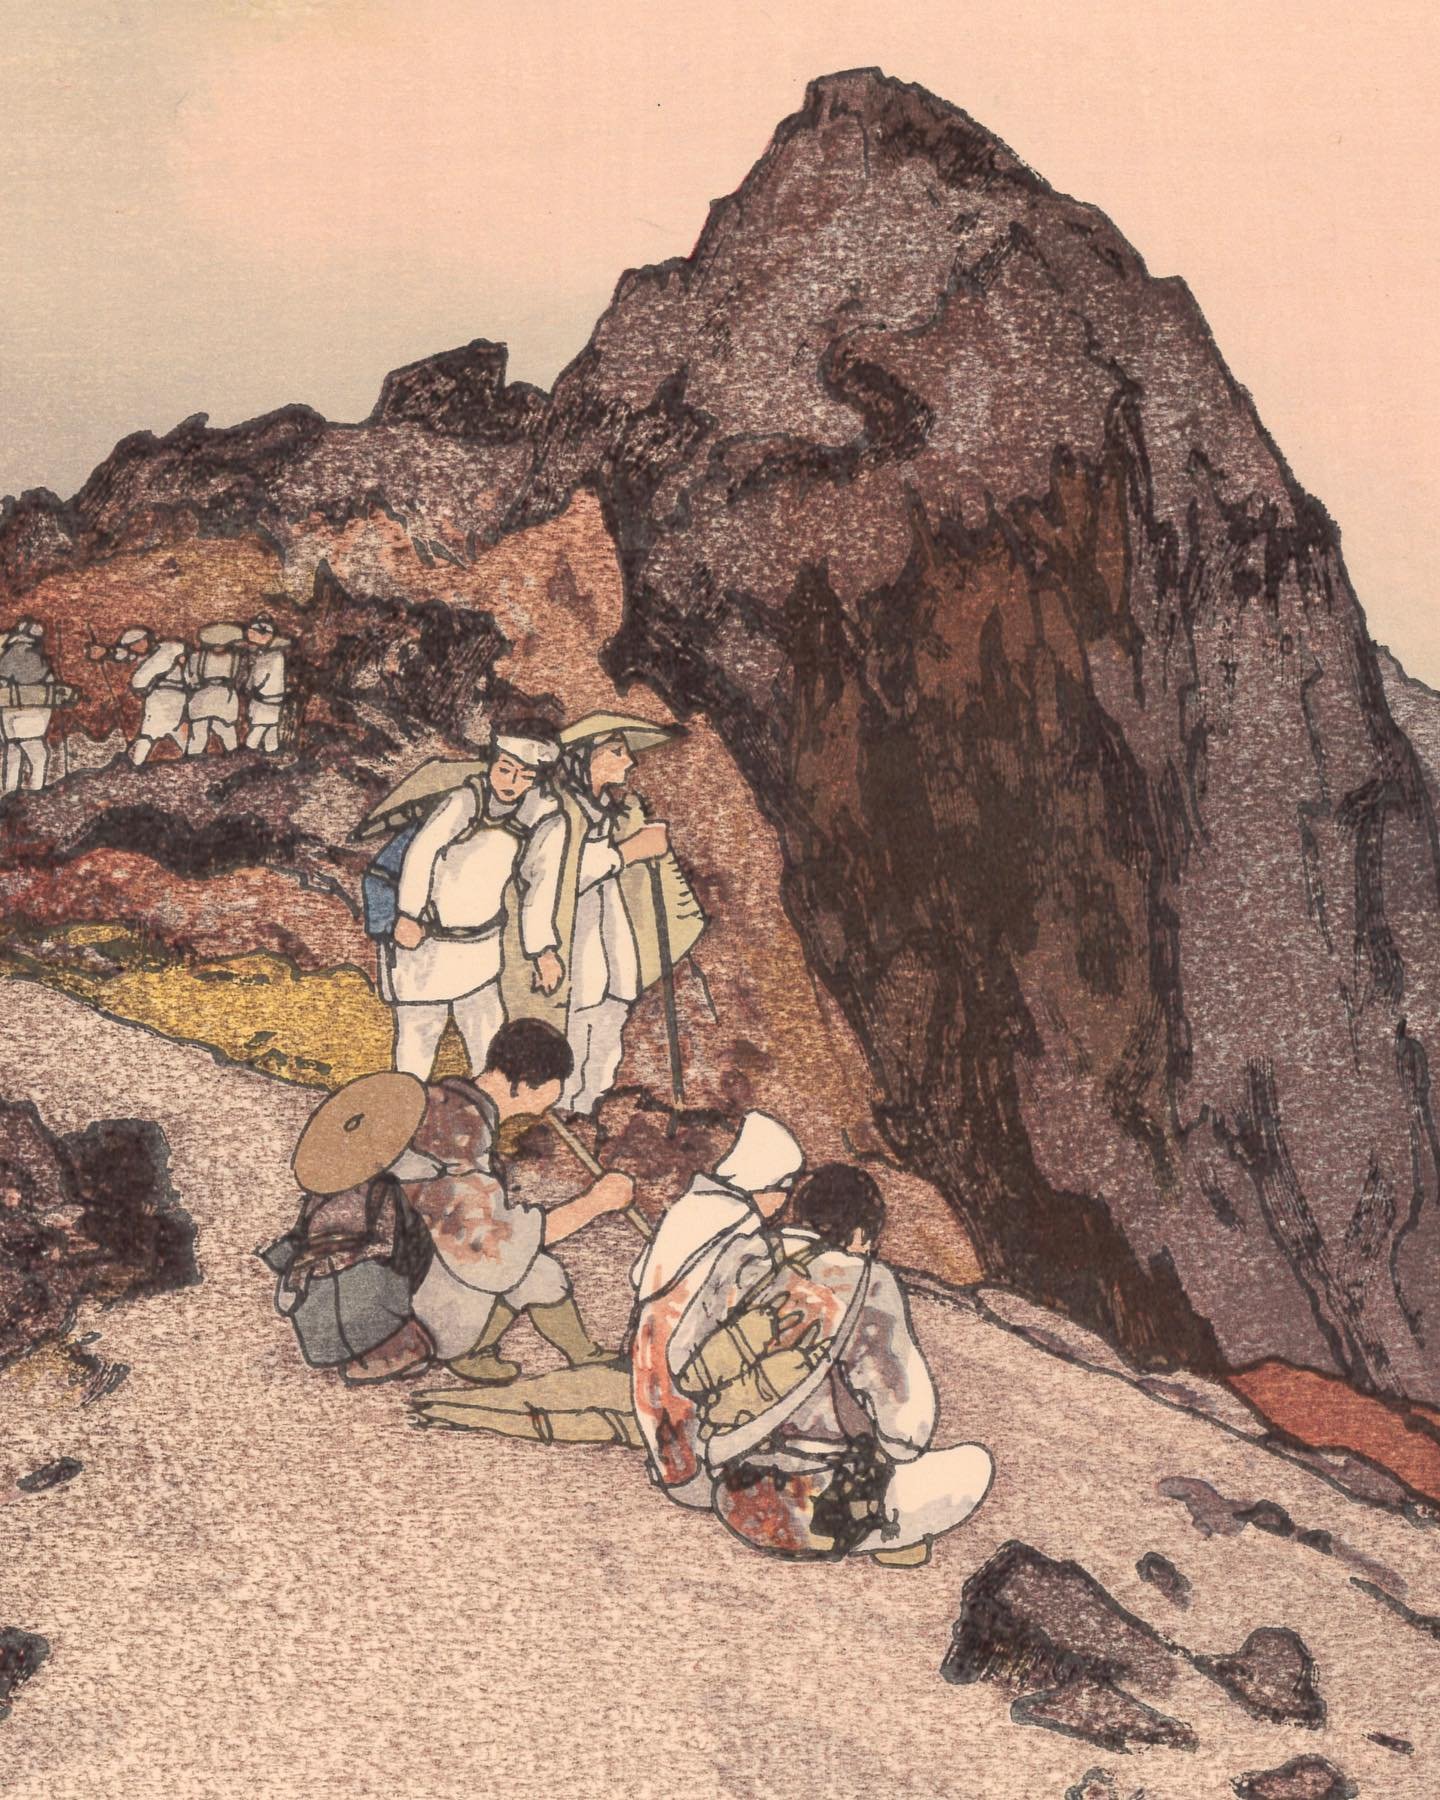 吉田博 Hiroshi Yoshida (1876-1950)

富士拾景 山頂剱ヶ峯 Summit of Fuji, from the series of Ten Views of Fuji

Ca. 1928

For more information on the artwork visit the website in our bio.
&middot;
&middot;
&middot;
&middot;
&middot;
&middot;
#artofukiyoe #ukiyoe #